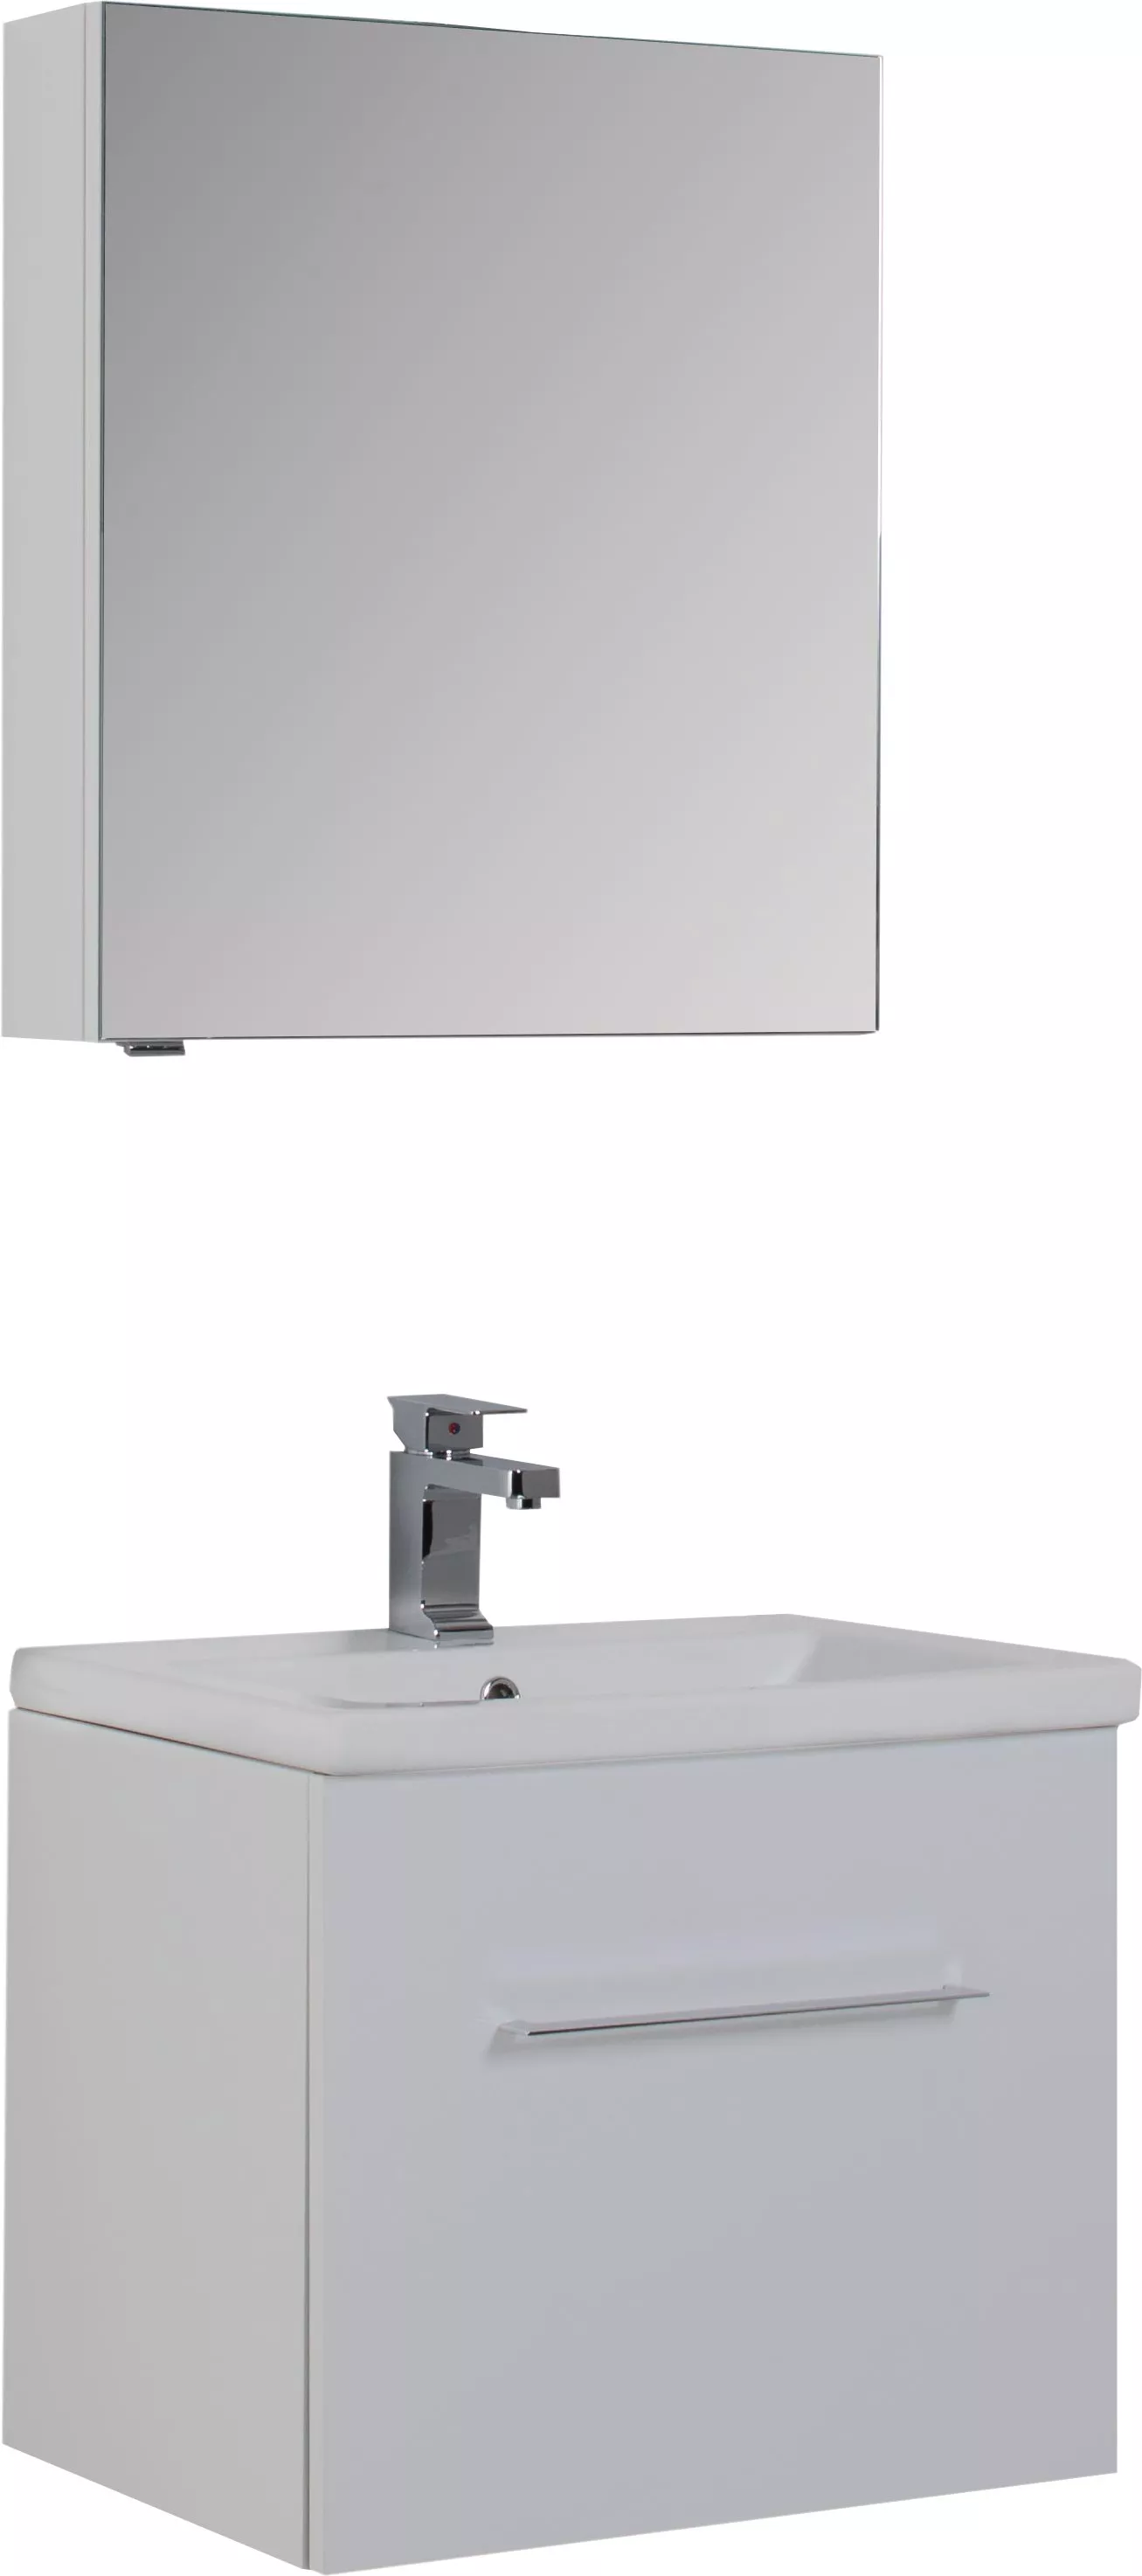 Мебель для ванной Aquanet Порто 60 белая, размер 60, цвет белый - фото 1